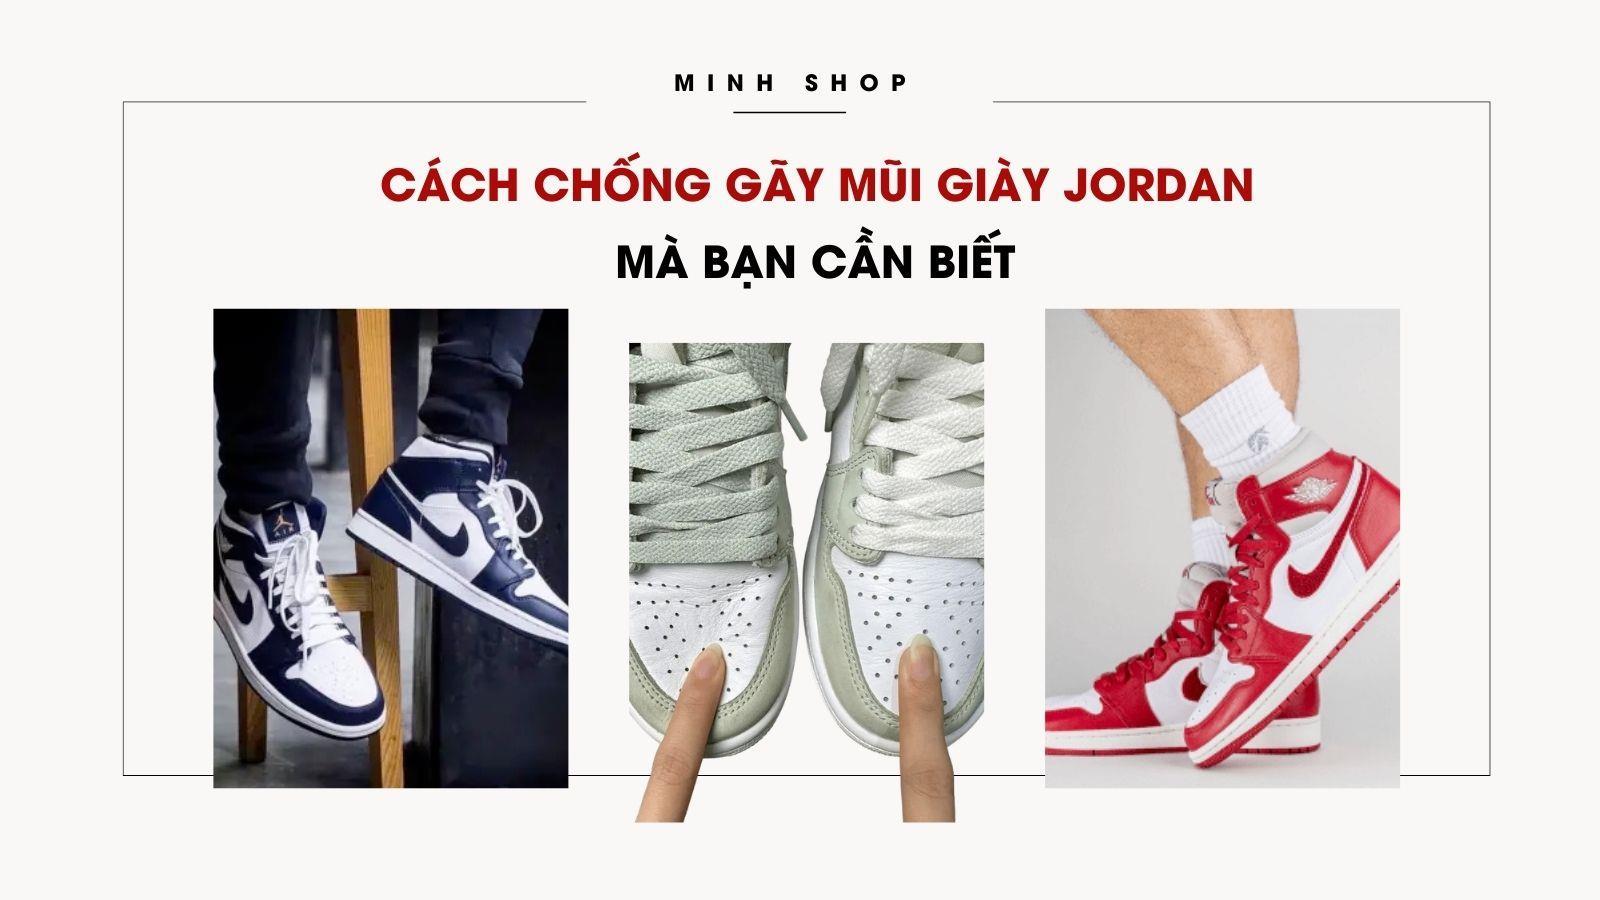 Minhshop.vn - Cách Chống Gãy Mũi Giày Jordan Mà Bạn Cần Biết